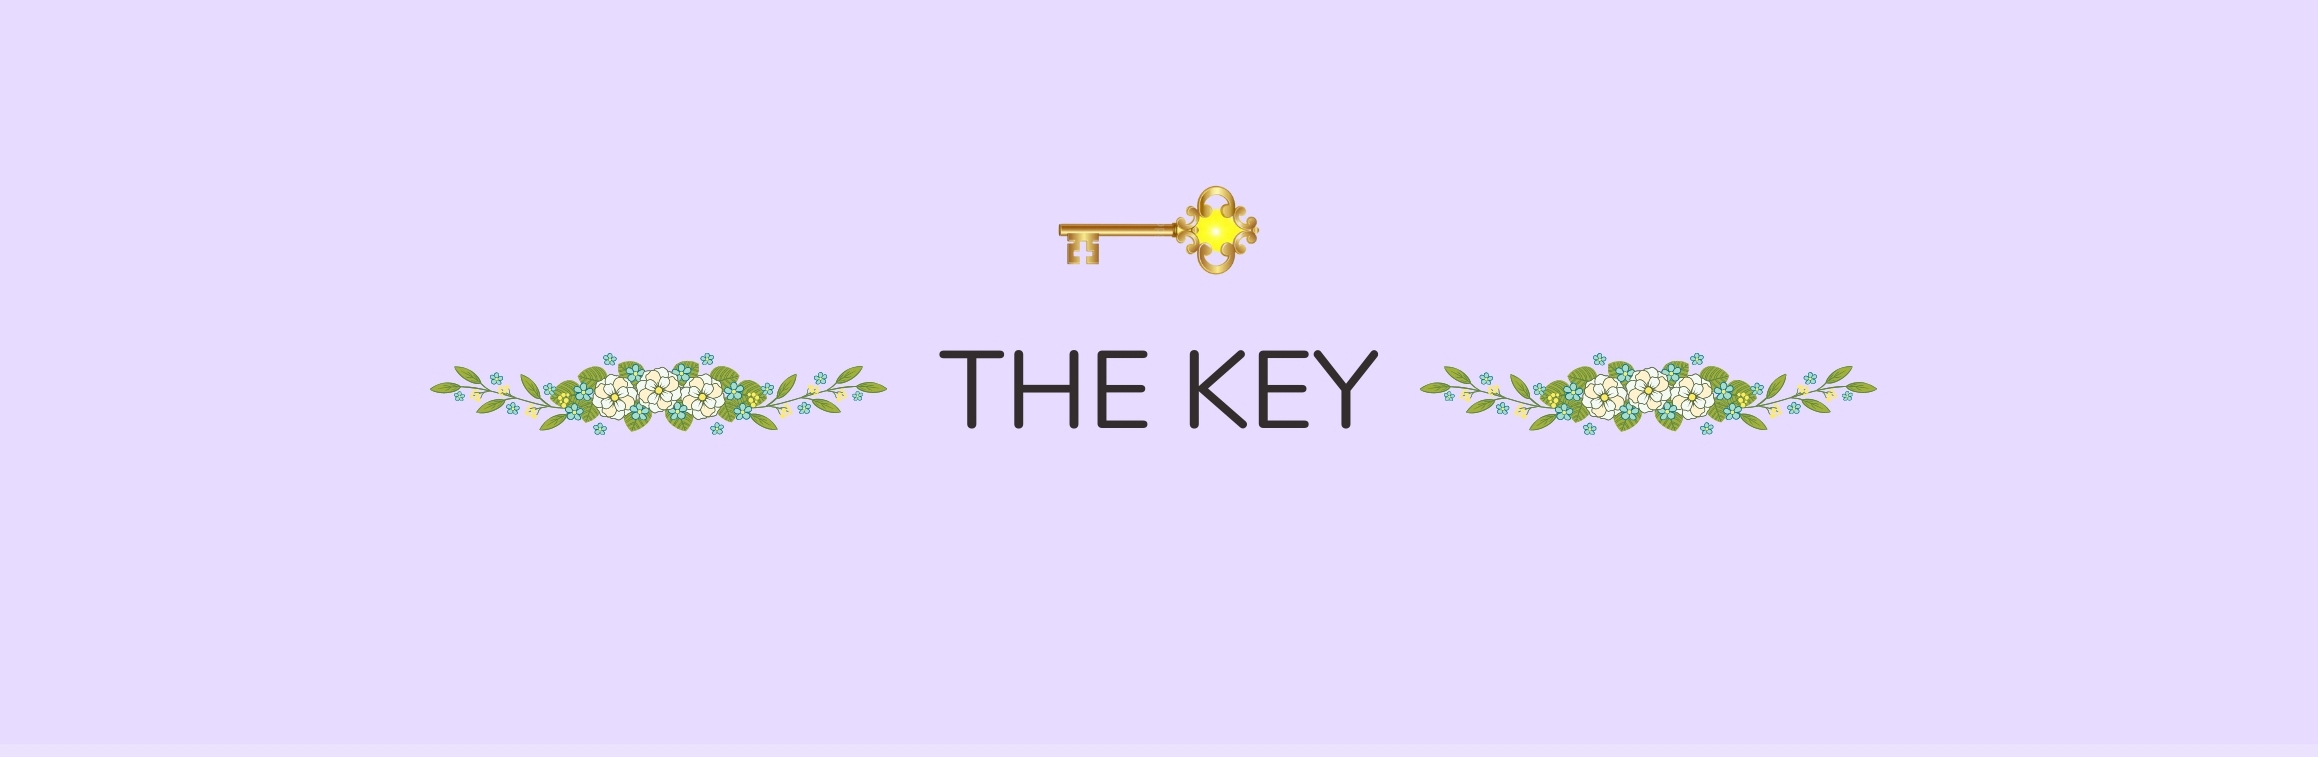 Key: 